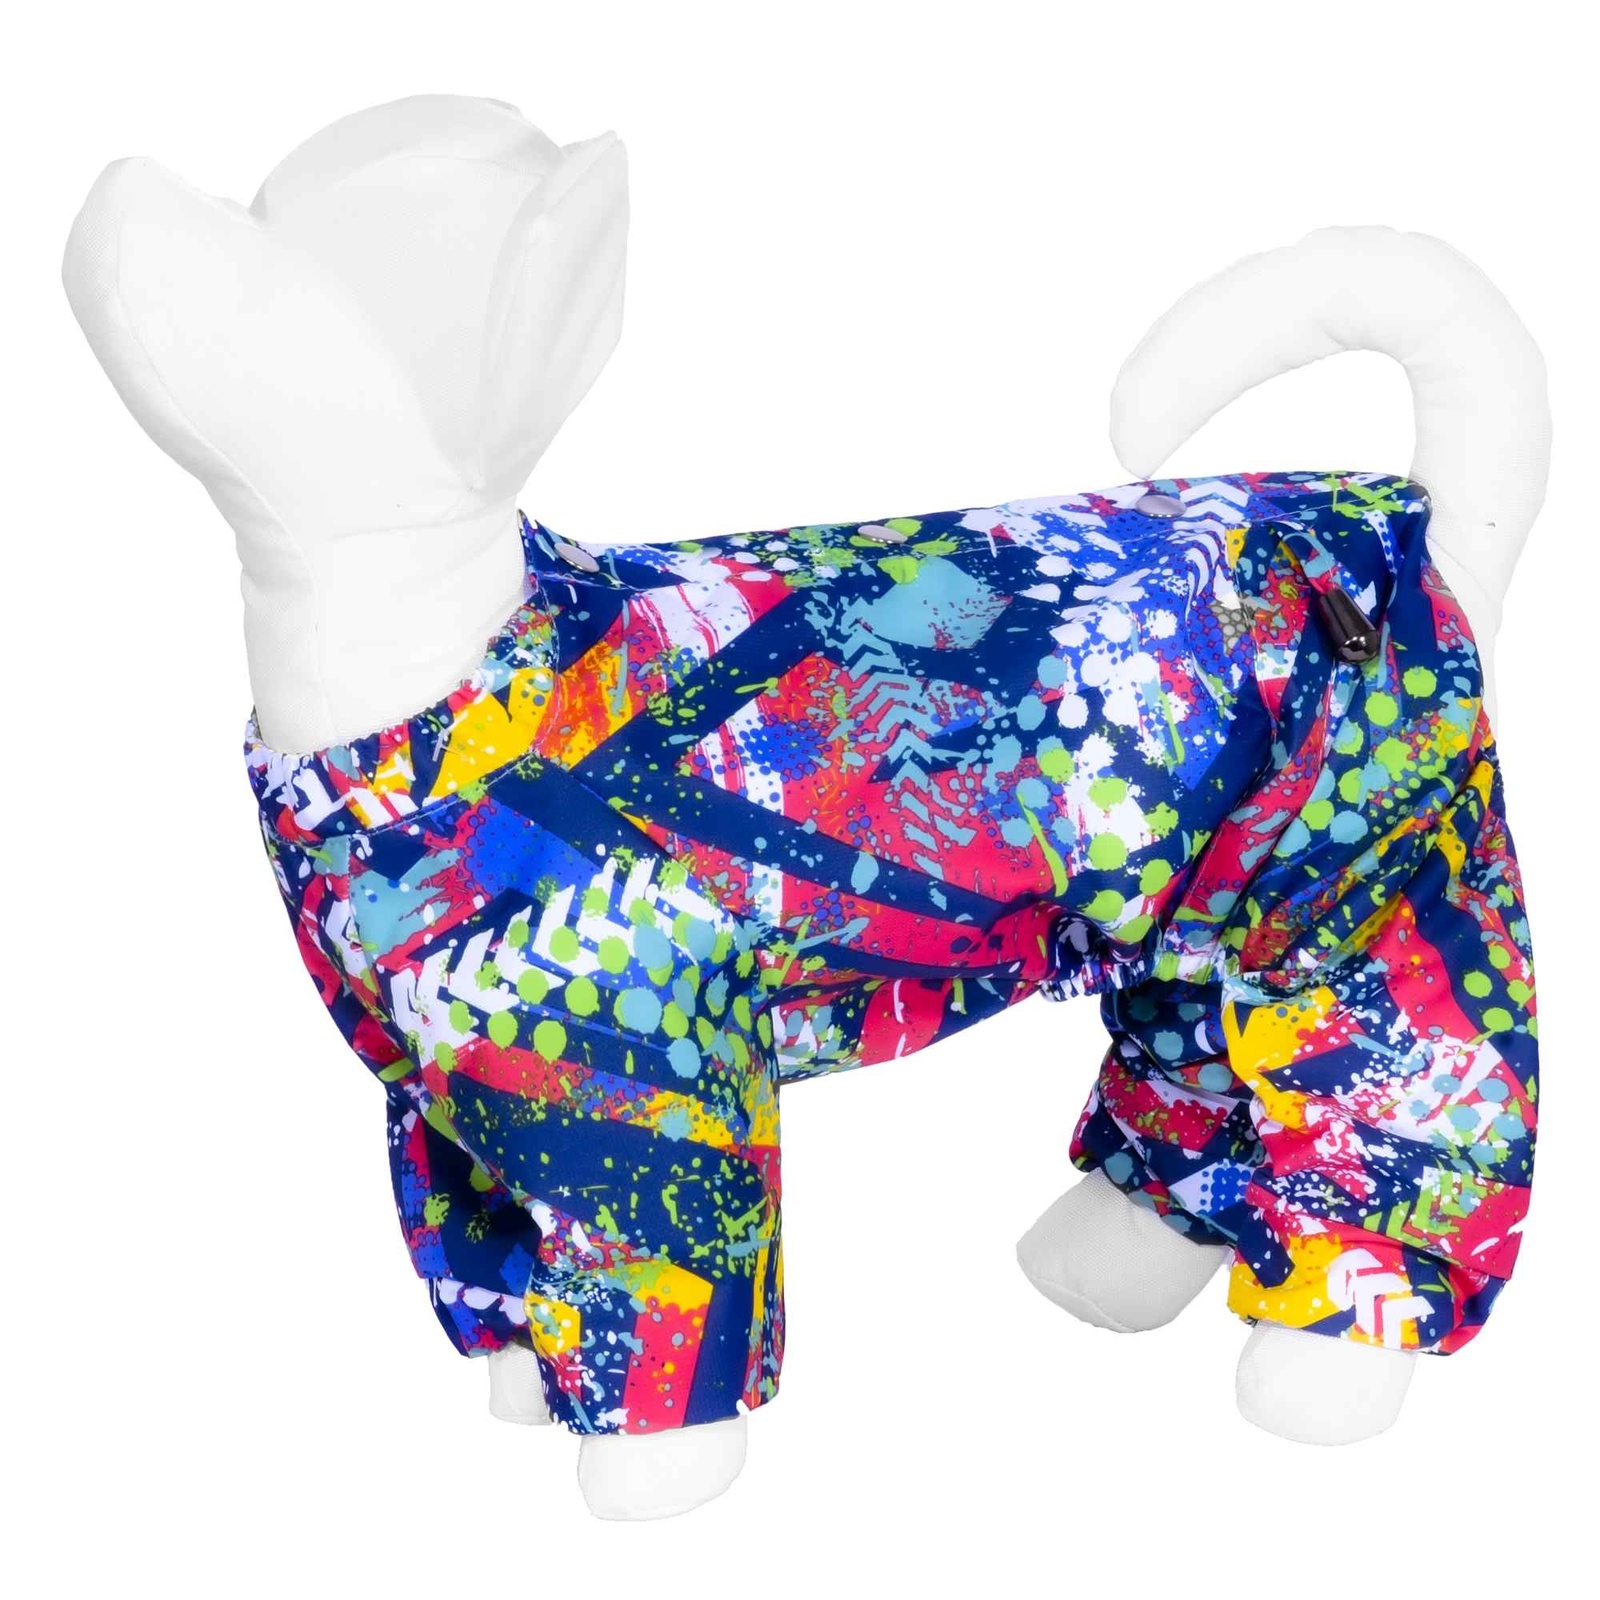 Yami-Yami одежда Yami-Yami одежда дождевик для собаки с рисунком «Абстракция», синий (S) yami yami одежда yami yami одежда дождевик для собаки с рисунком абстракция для породы такса 1